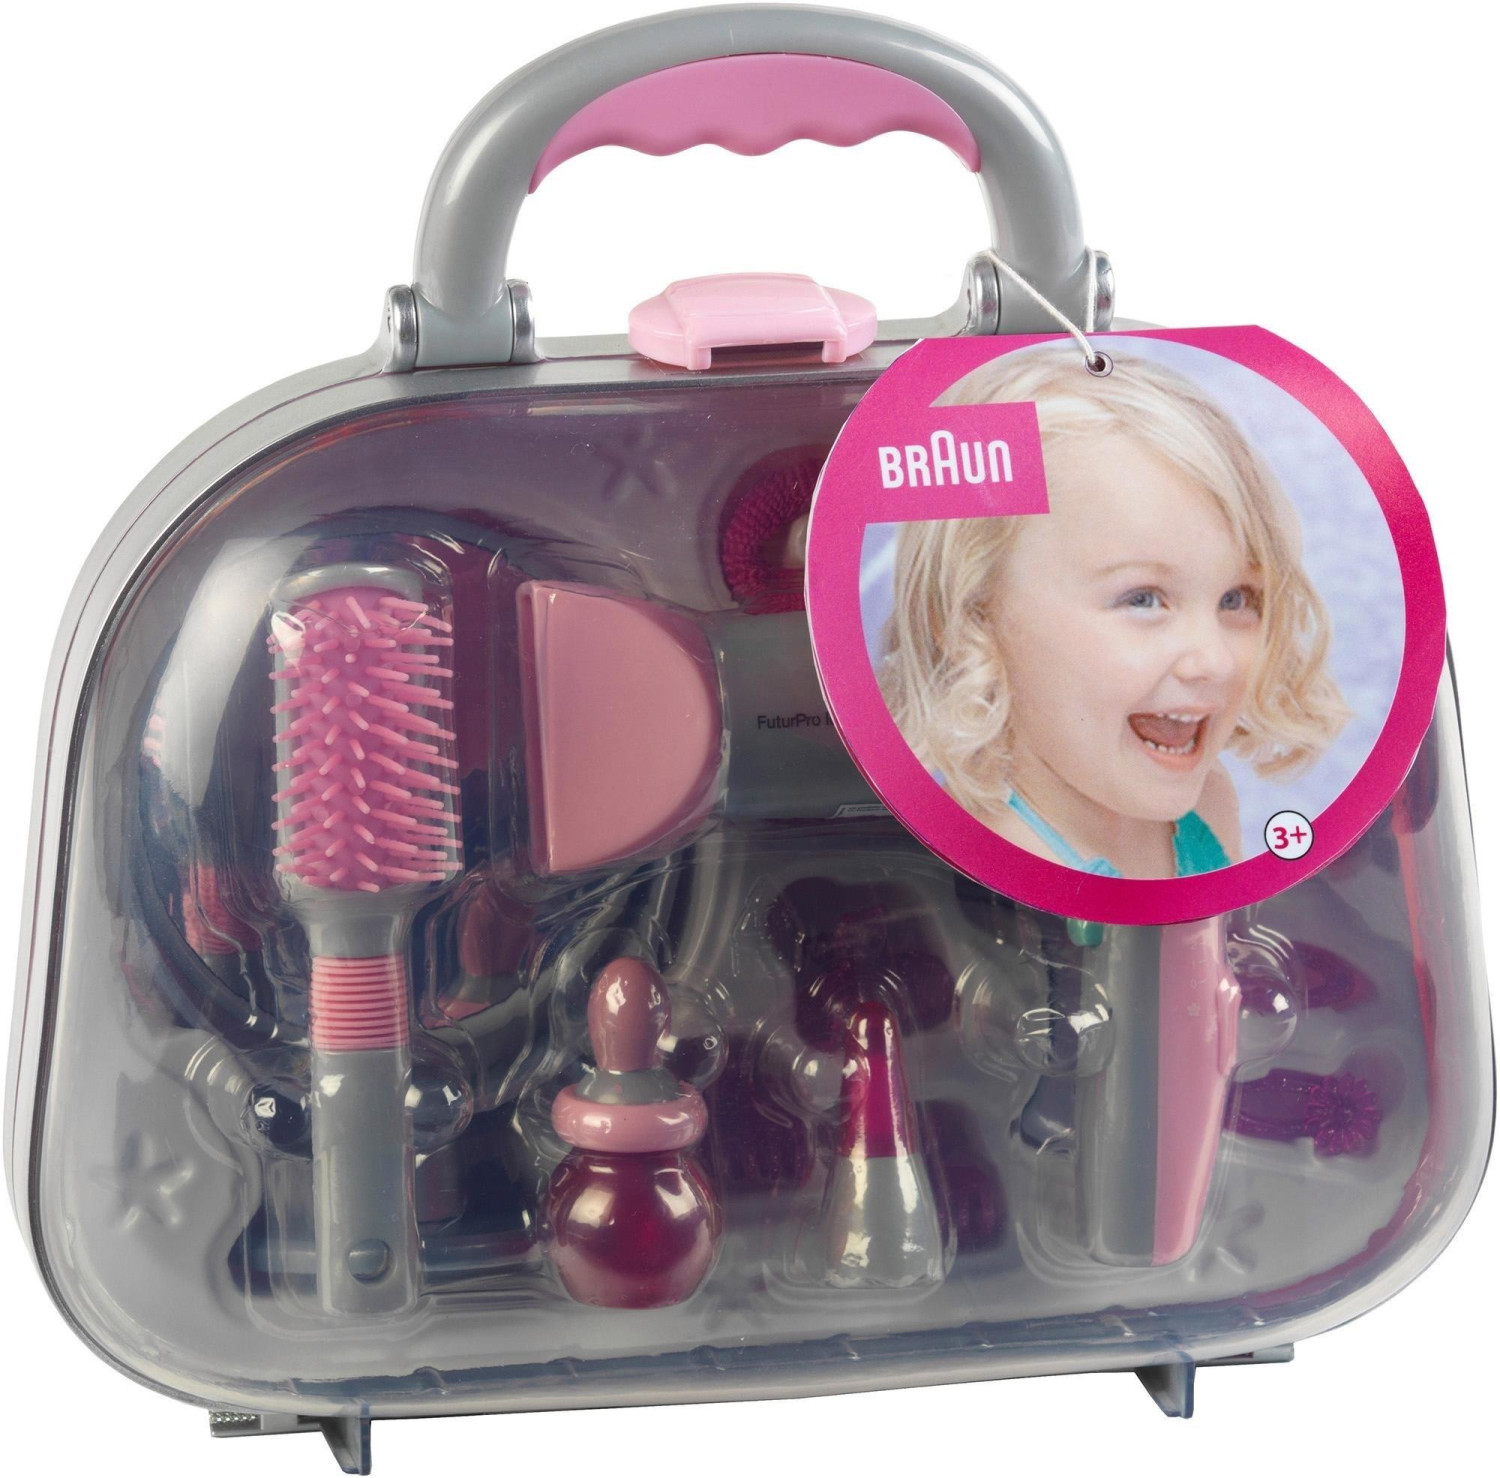 klein toys Valigetta con asciugacapelli Braun e accessori (5855) a € 19,99  (oggi)